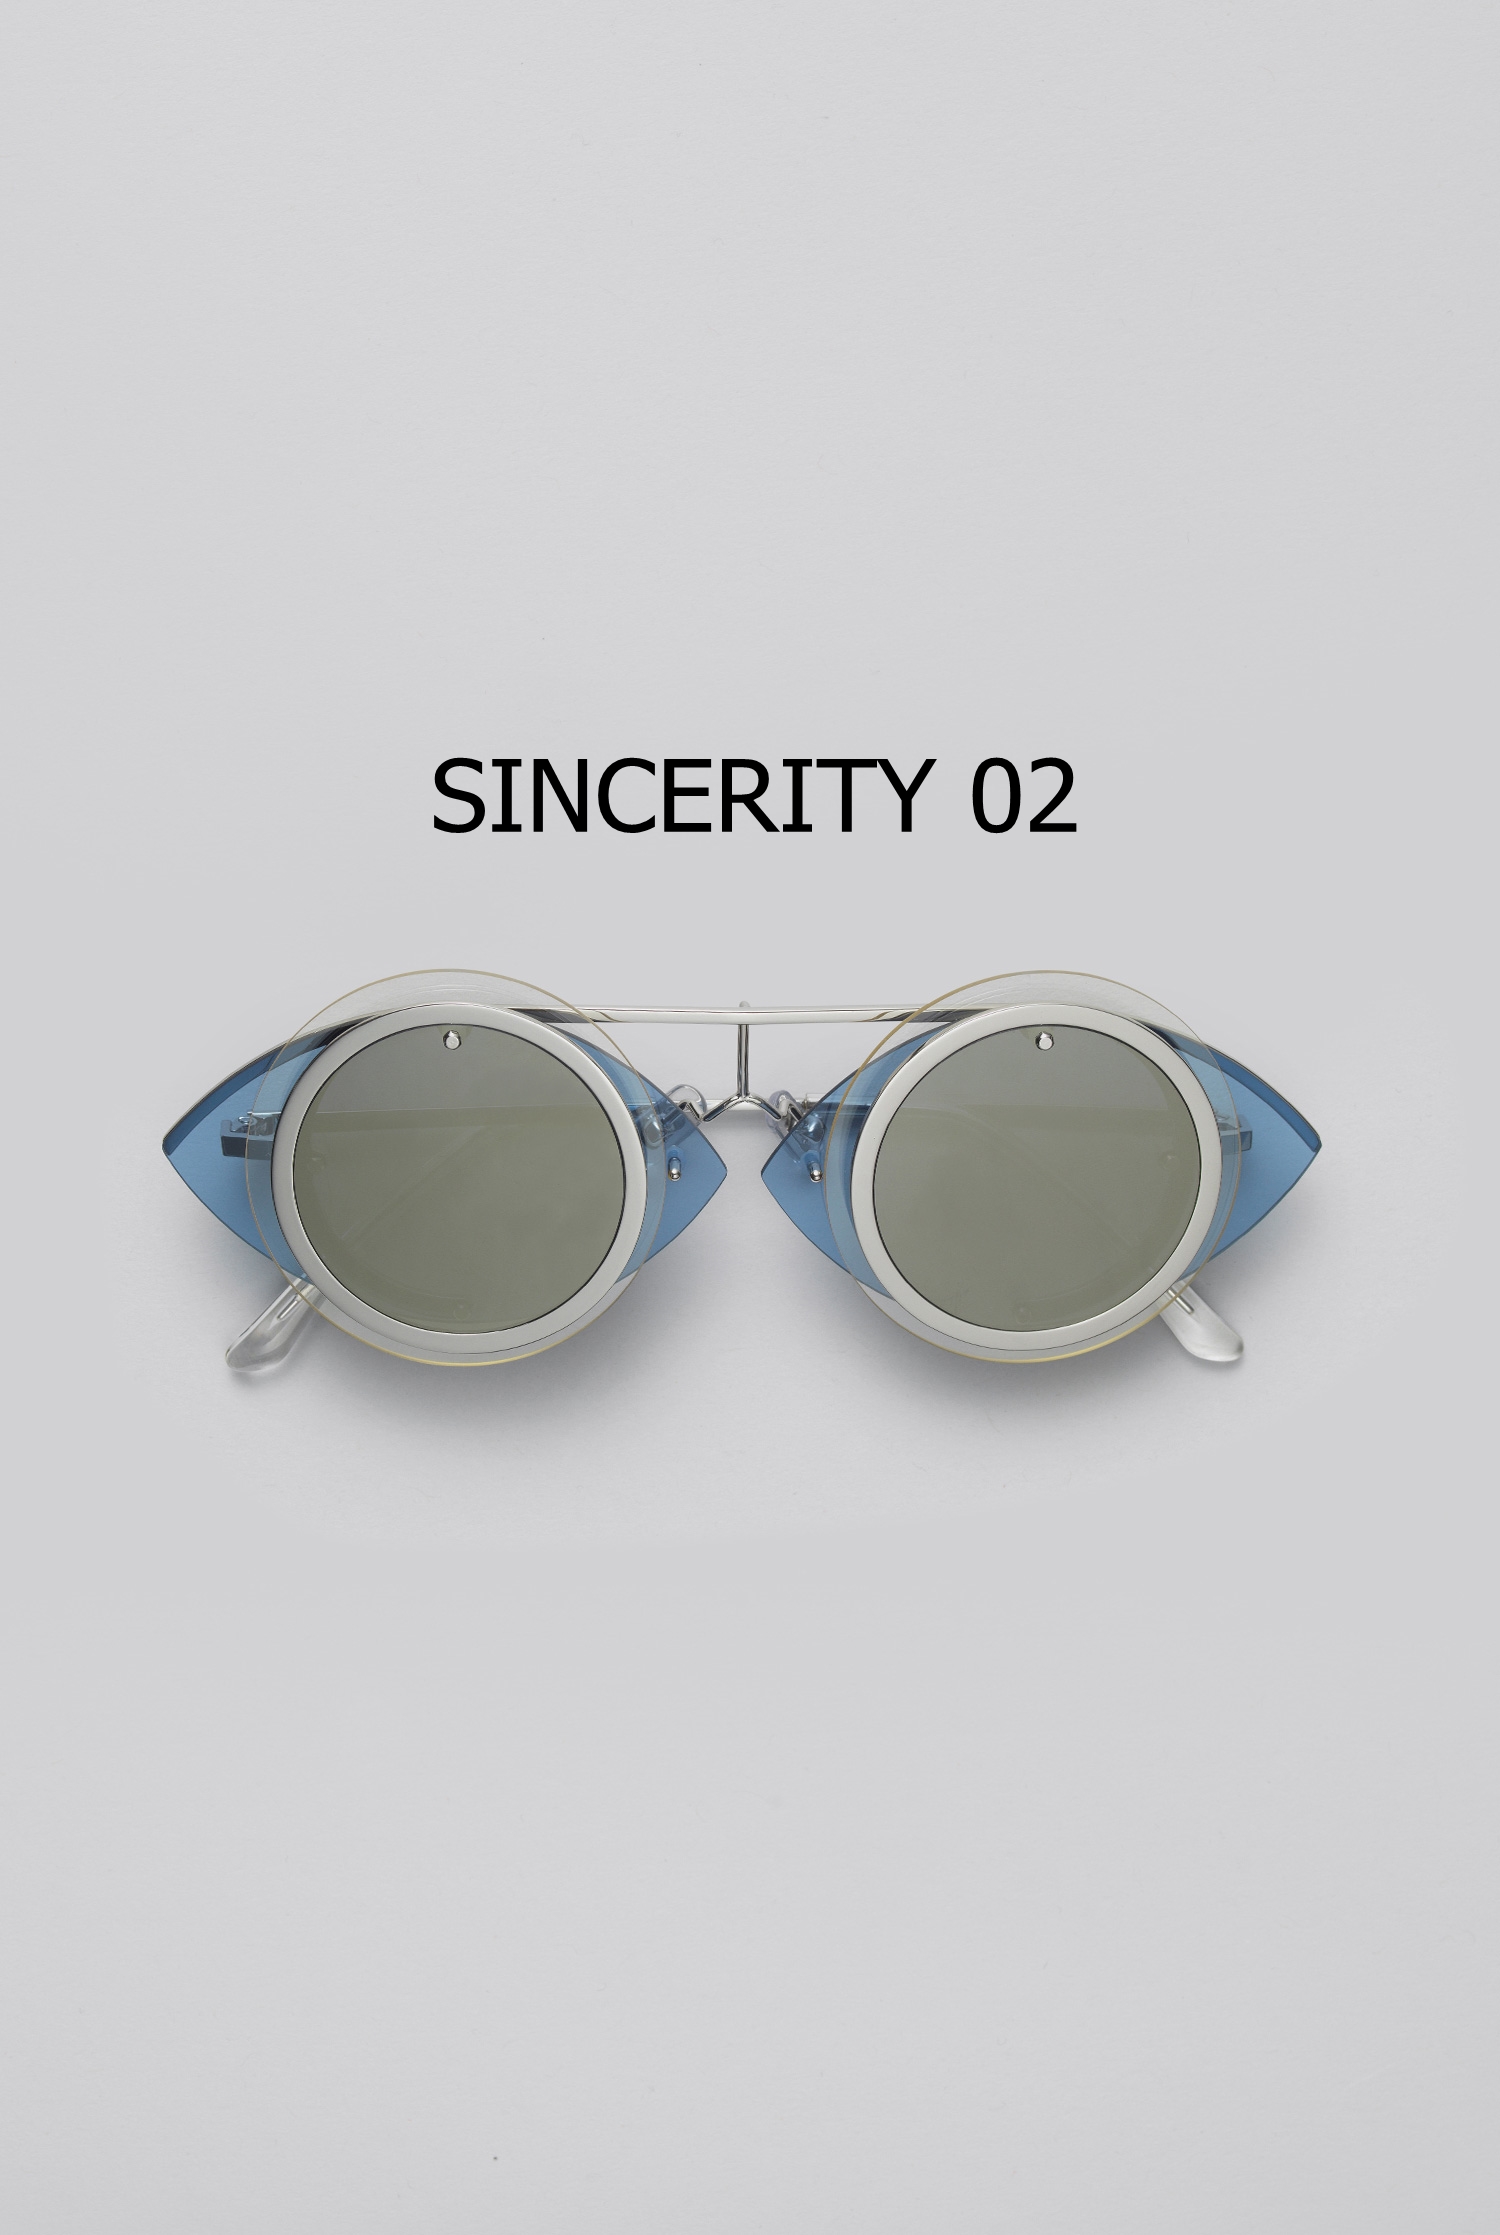 SINCERITY 02